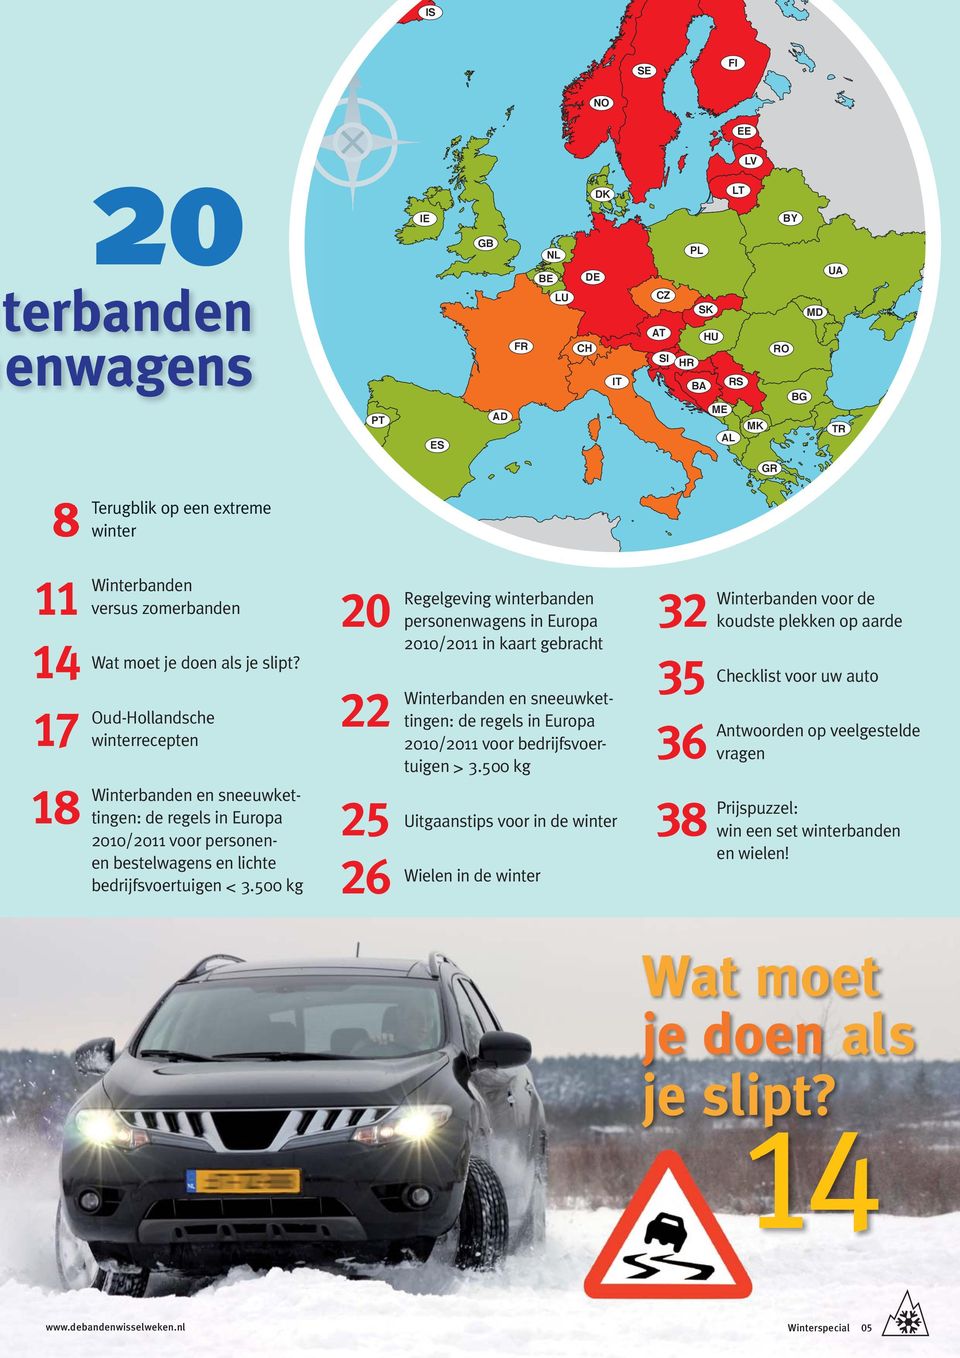 Oud-Hollandsche winterrecepten Winterbanden en sneeuwkettingen: de regels in Europa 2010/2011 voor personenen bestelwagens en lichte bedrijfsvoertuigen < 3.